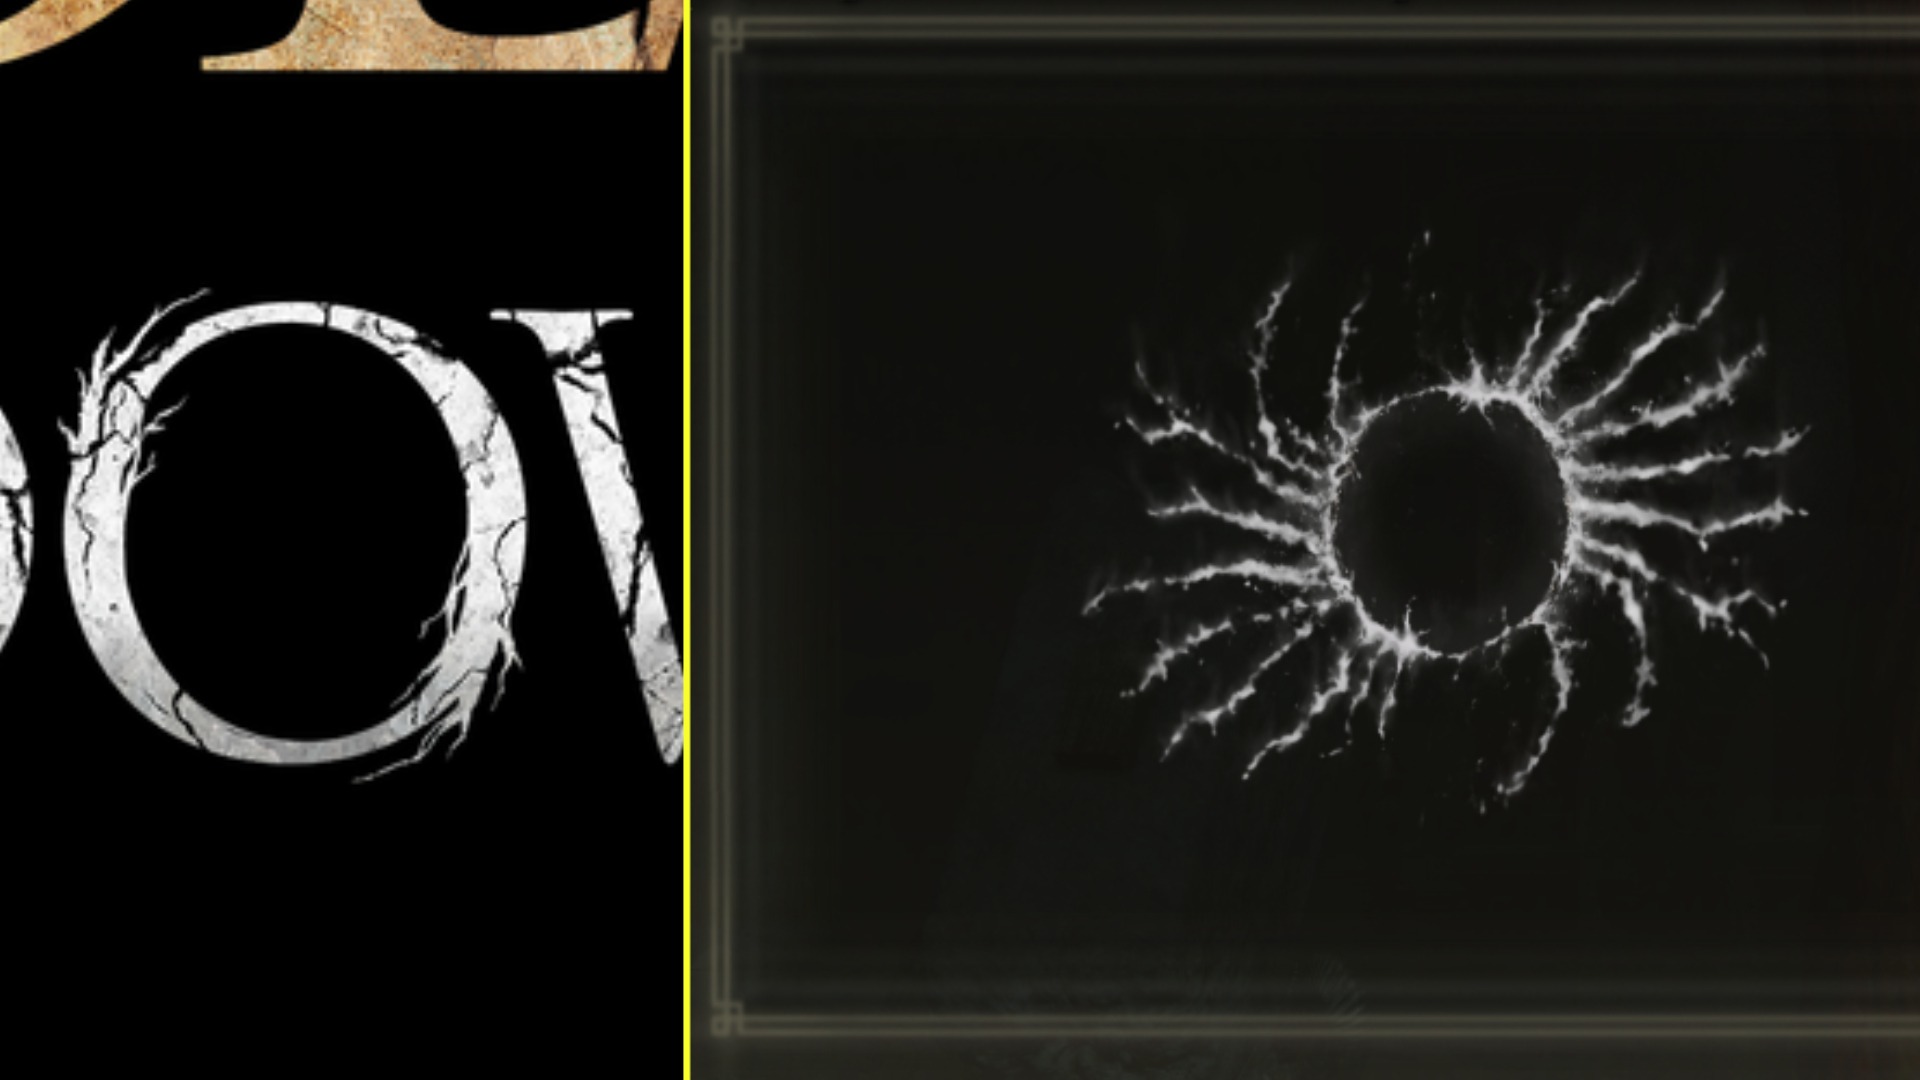 somiglianza tra runa riparatoria e "O" del logo del dlc di elden ring